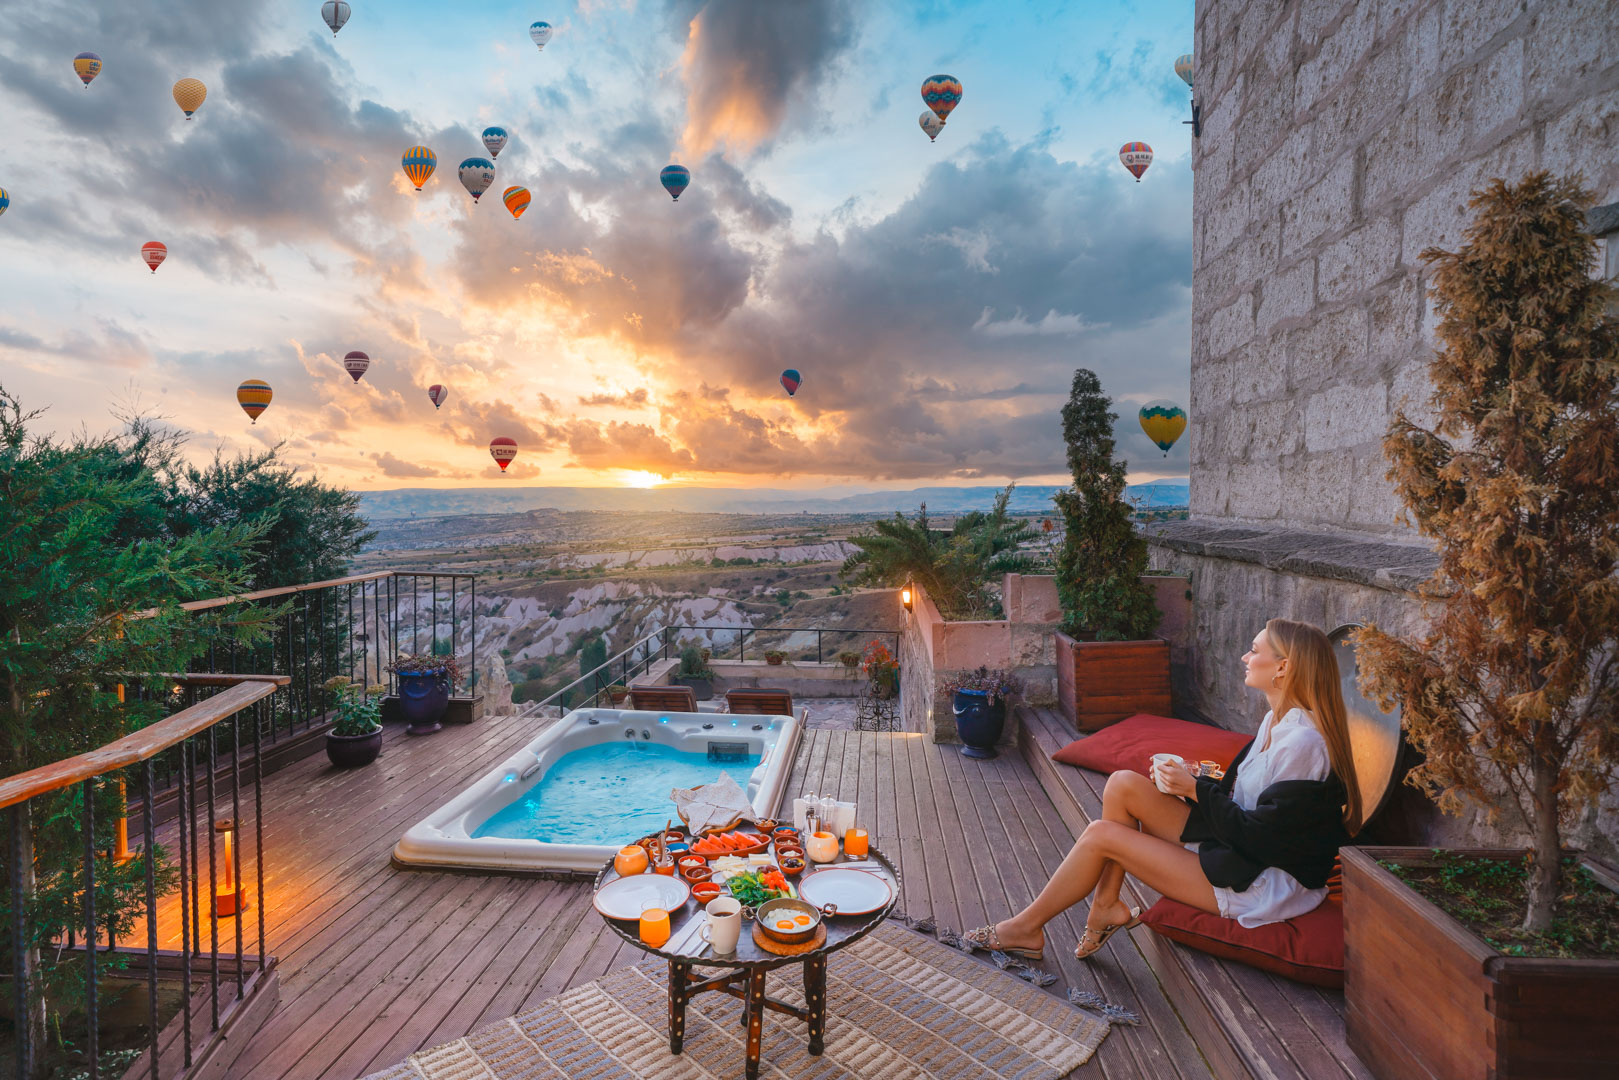 Cappadocia hotel with balloon view